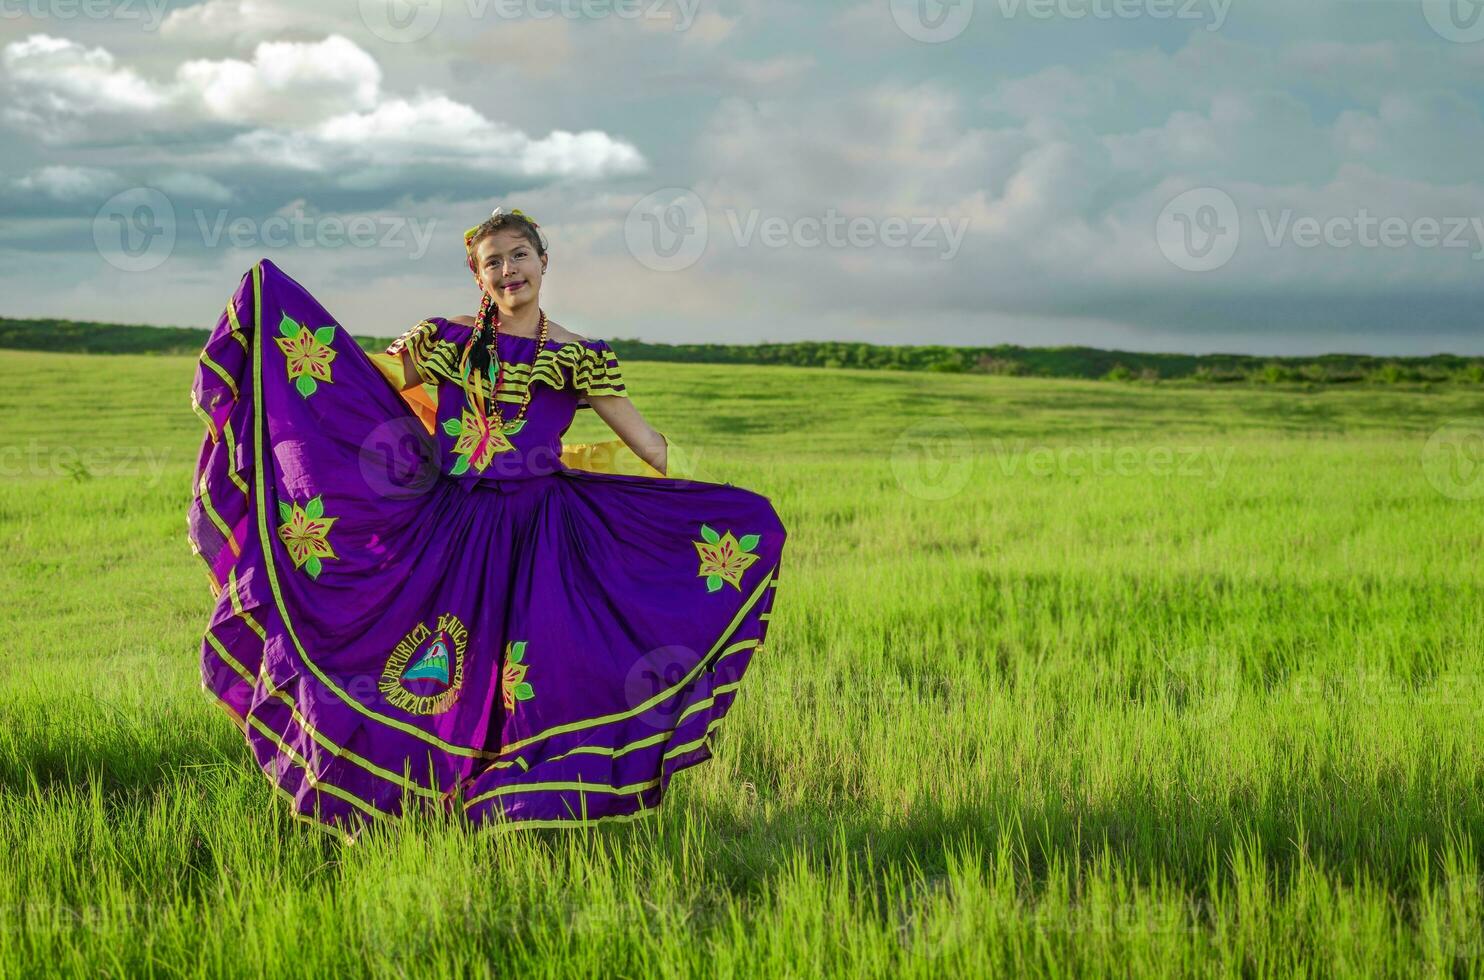 Nicaraguaanse vrouw in traditioneel volk kostuum in de veld- gras, portret van Nicaraguaanse vrouw vervelend nationaal volk kostuum foto